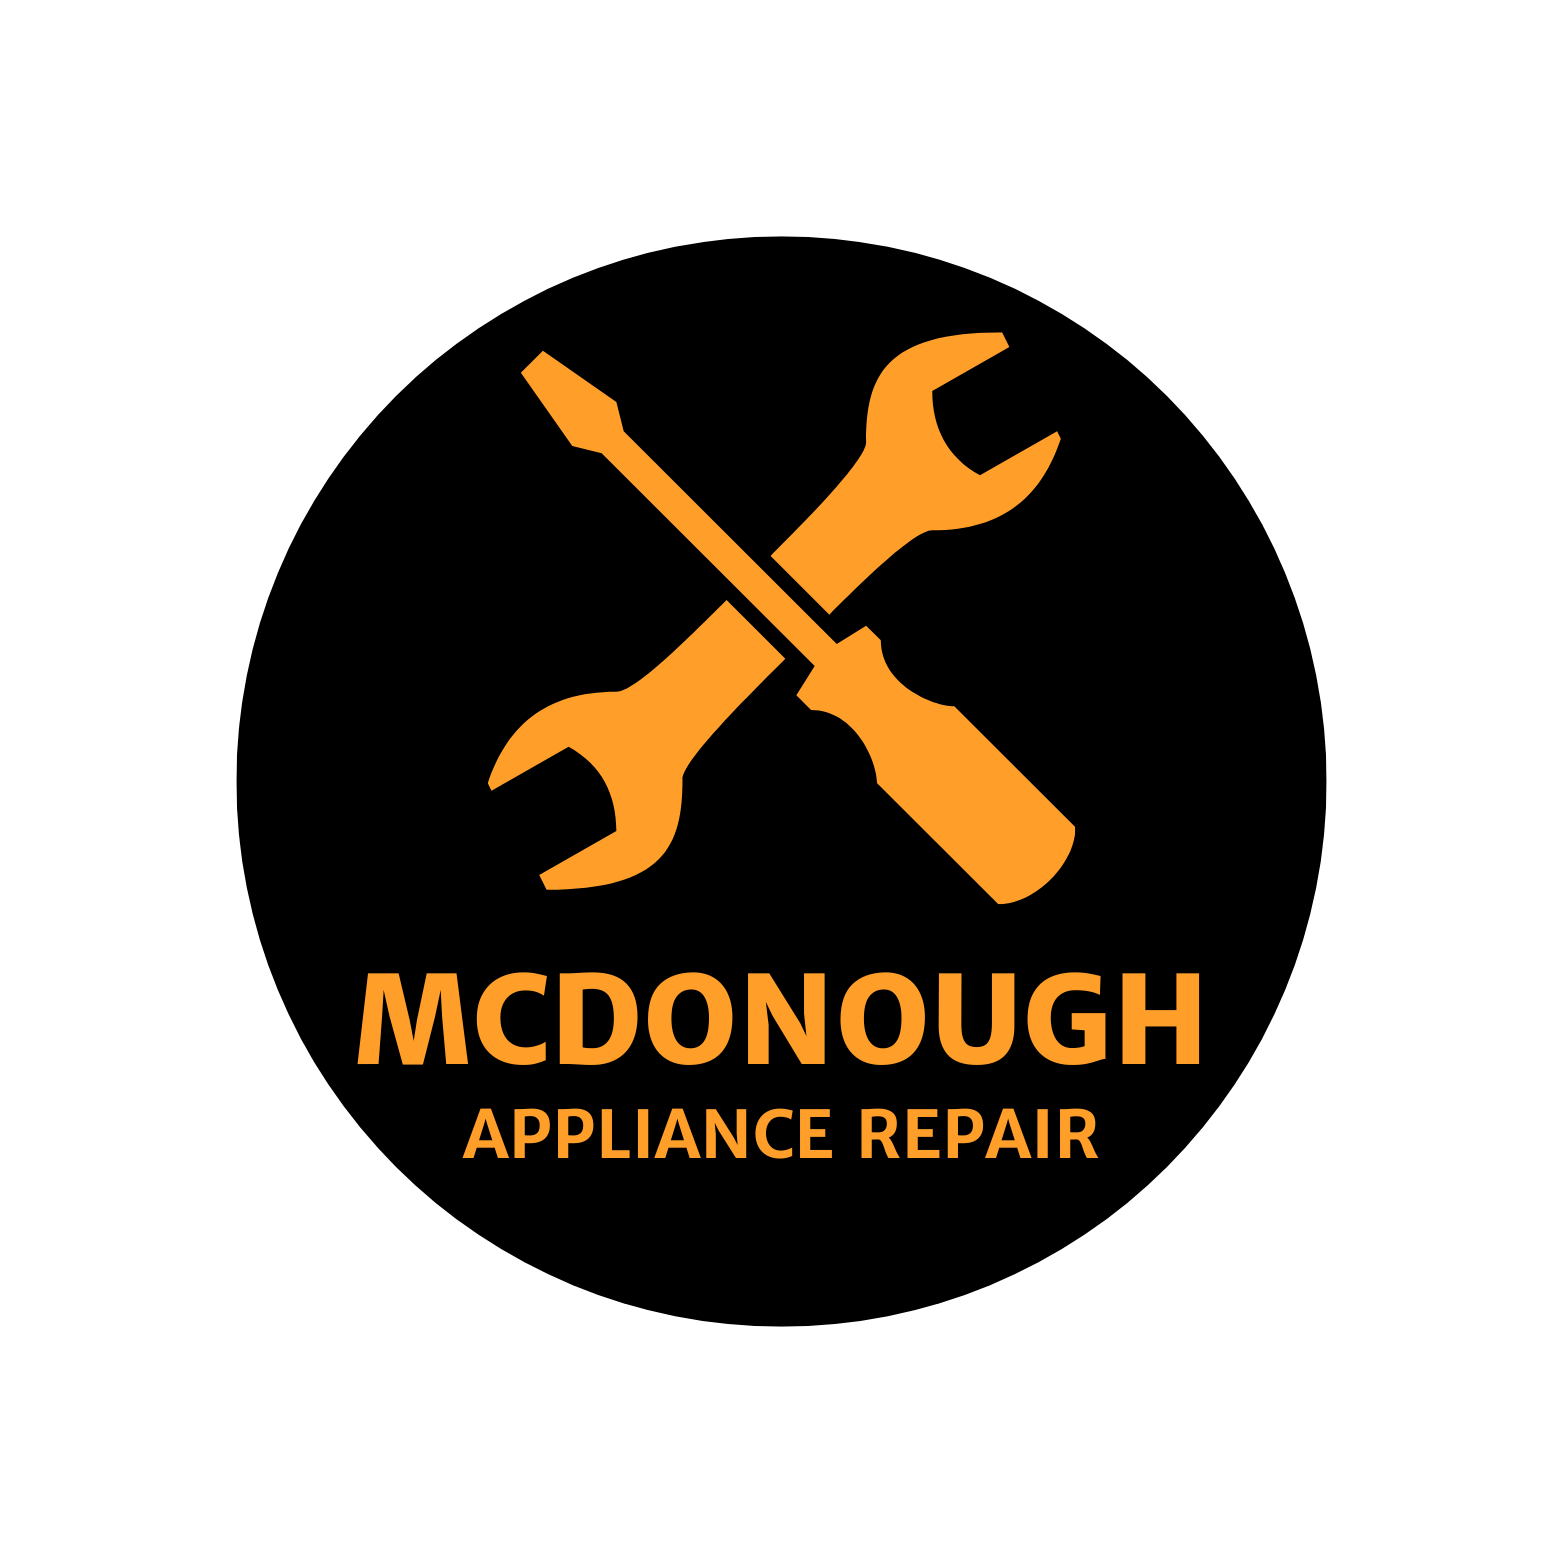 MCDONOUGH-appliance-rpeair.png